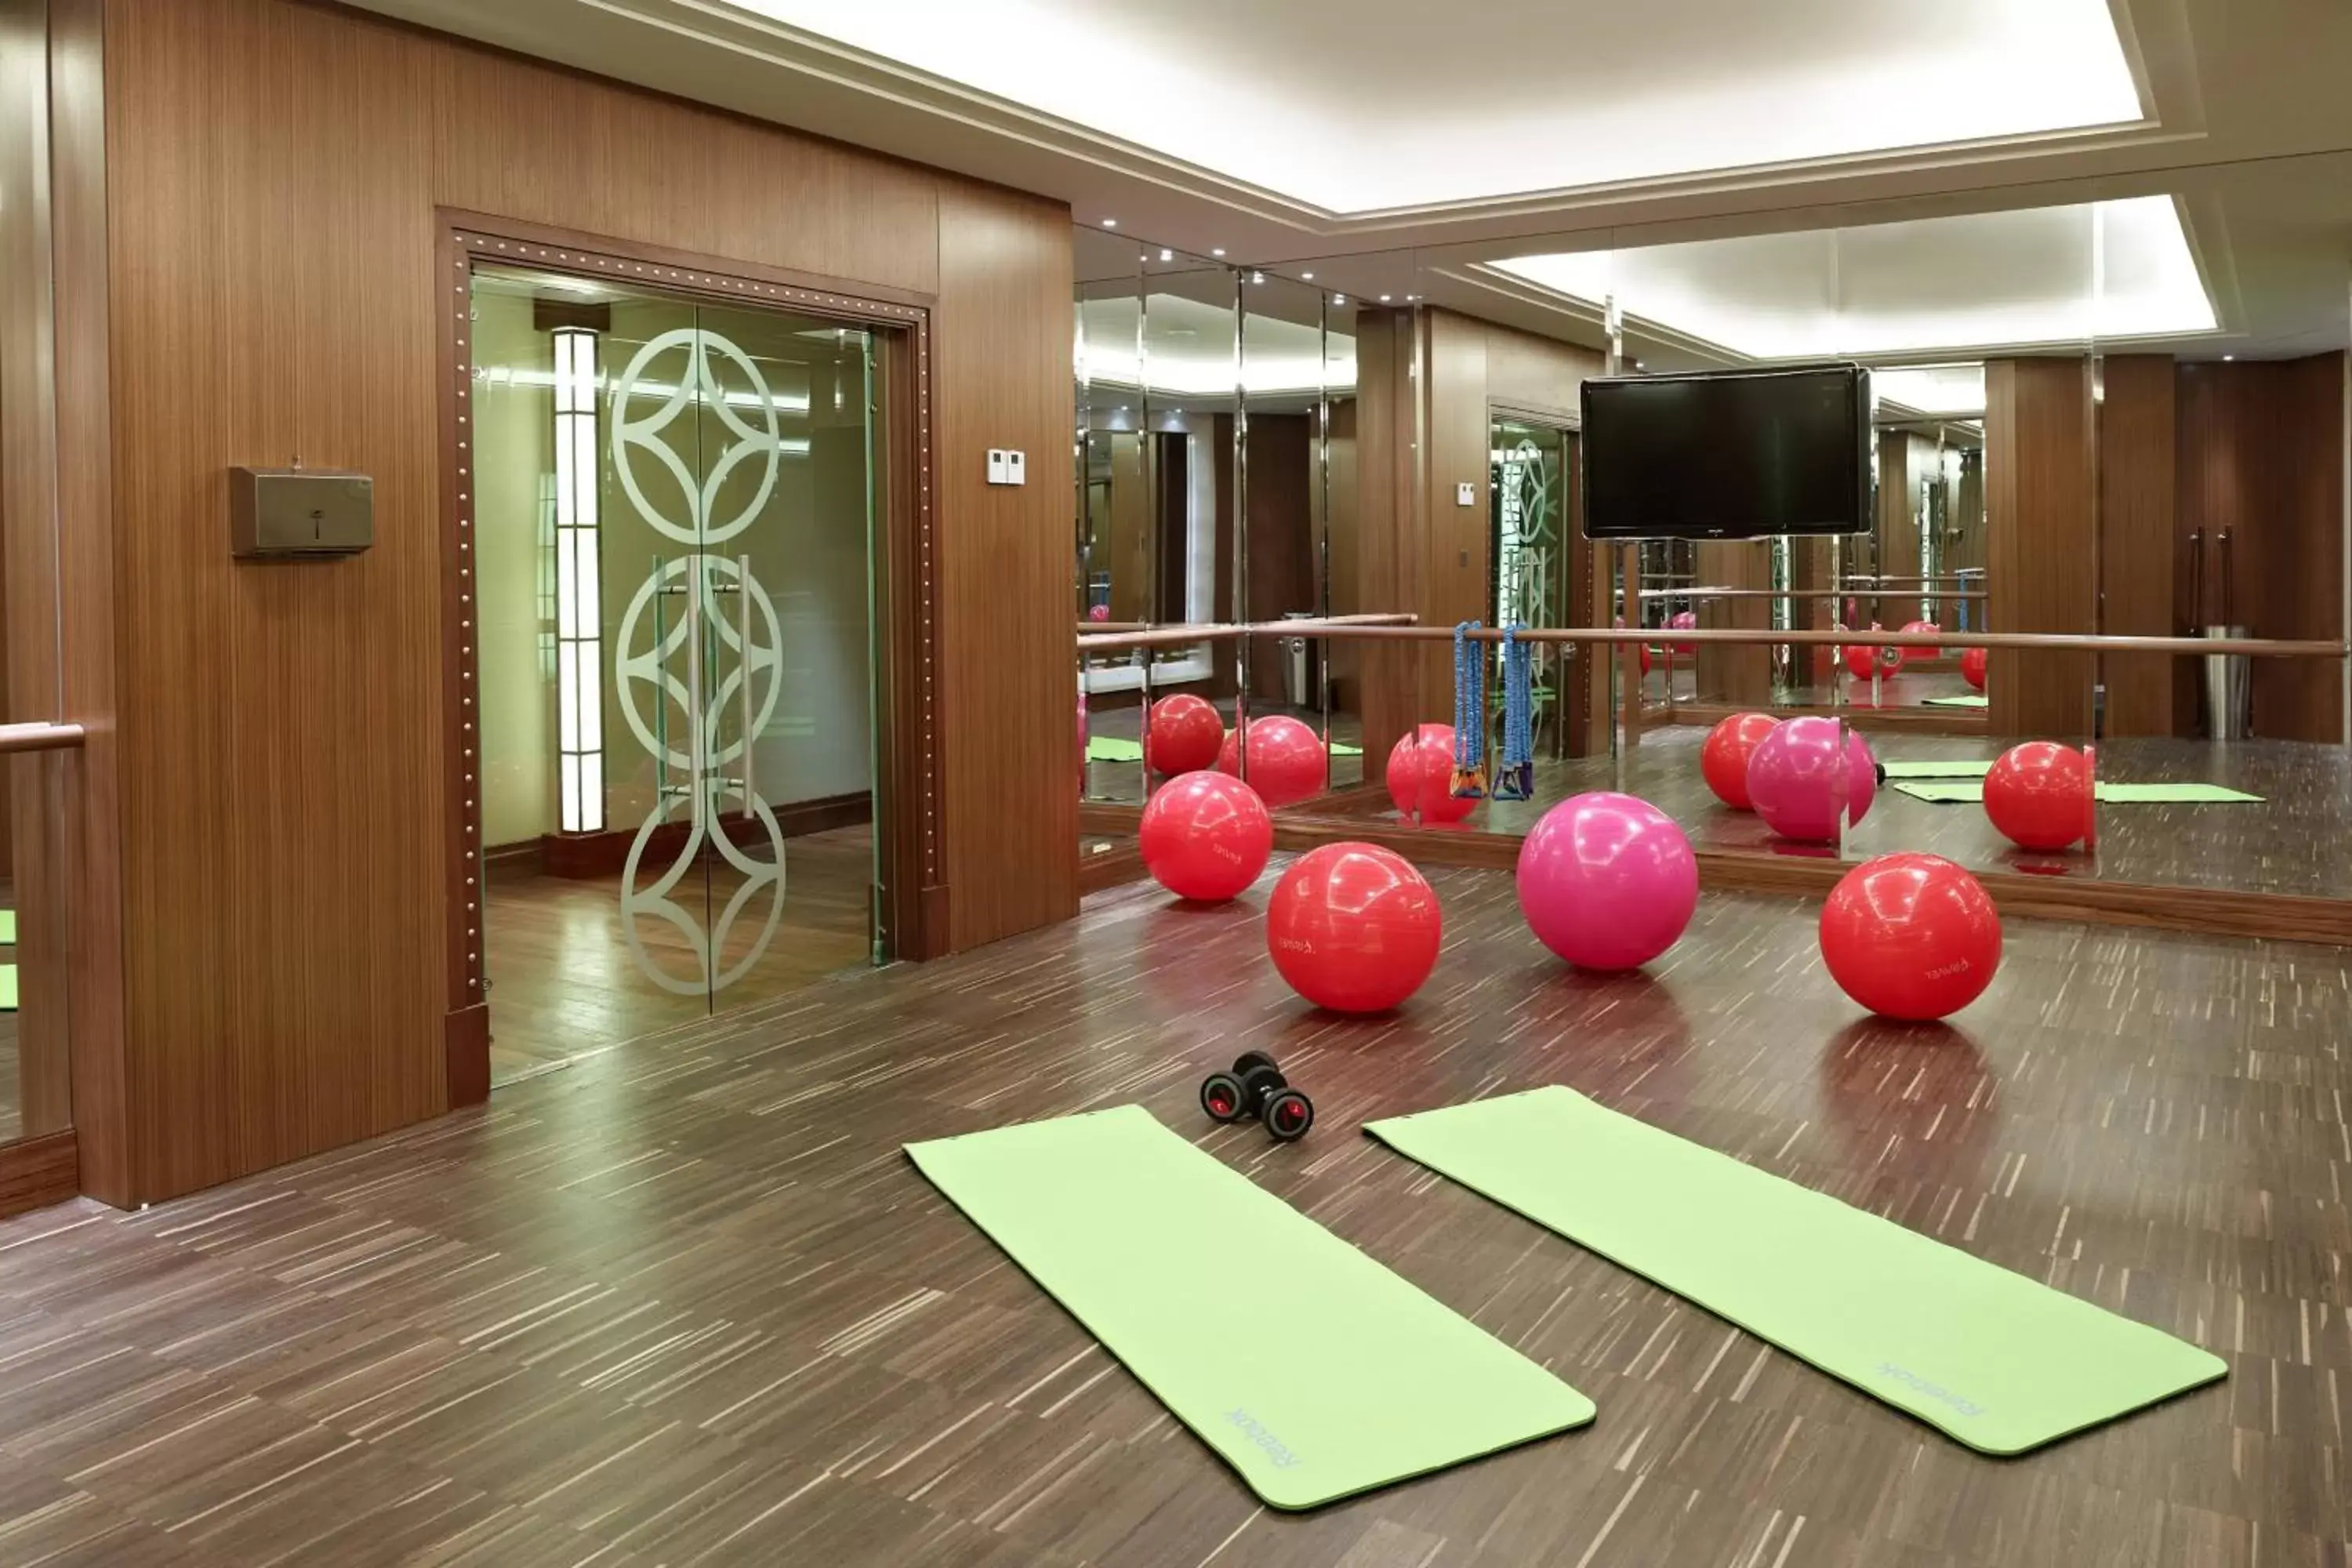 Fitness centre/facilities in JW Marriott Hotel Ankara